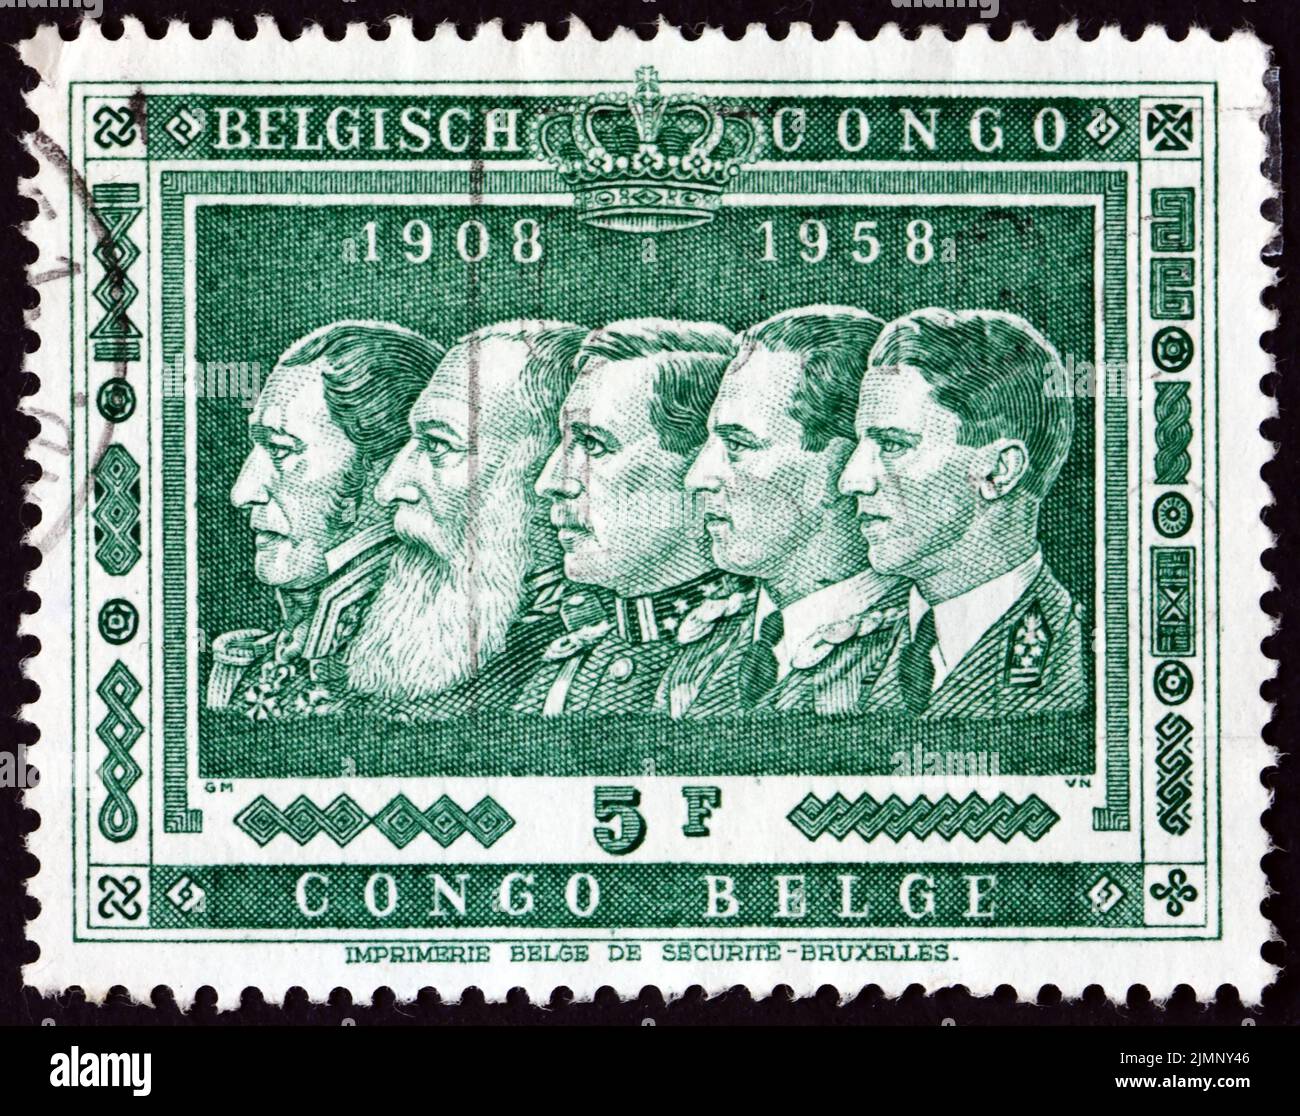 BELGISCHER KONGO - UM 1958: Eine in Belgisch-Kongo gedruckte Marke zeigt Könige von Belgien, 50. Jahre der Annexion des Kongo durch Belgien, um 1958 Stockfoto